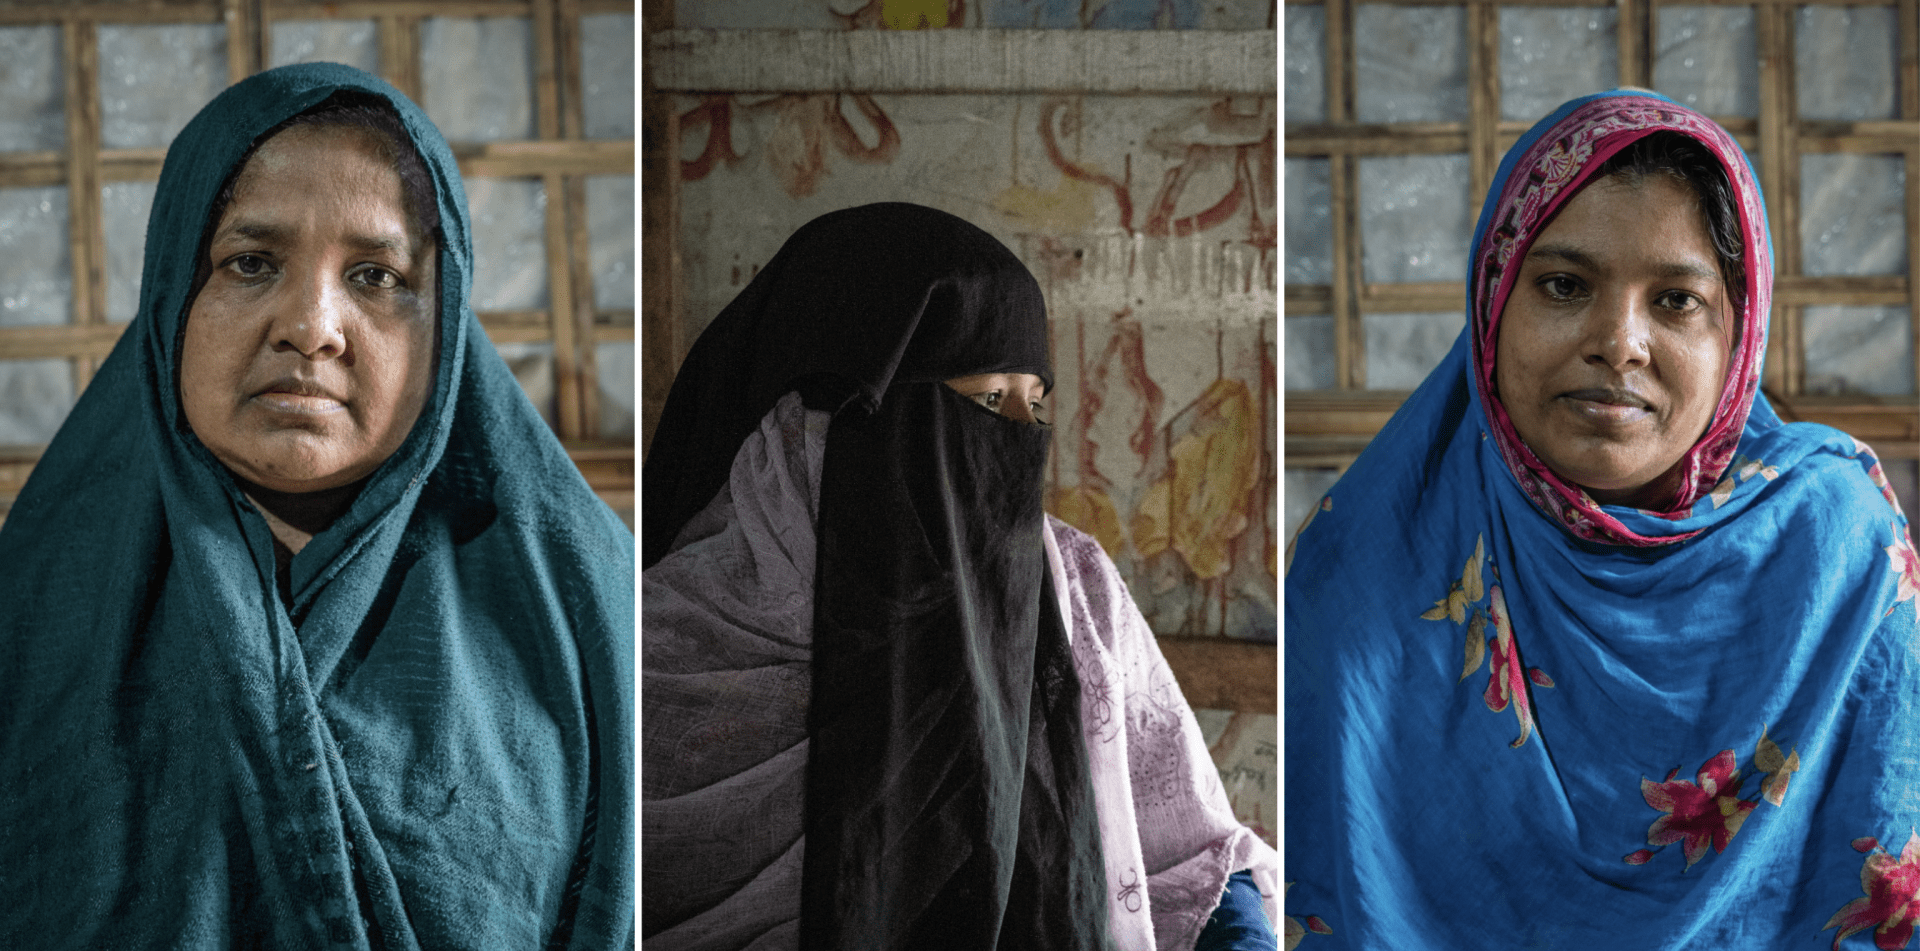 Portraits de Mobina (gauche), Shamsun (centre) et Hamida (droite). Les trois femmes, réfugiés rohingyas vivant dans les camps de Cox’s Bazar, au Bangladesh, ont contracté le virus de l’hépatite C.